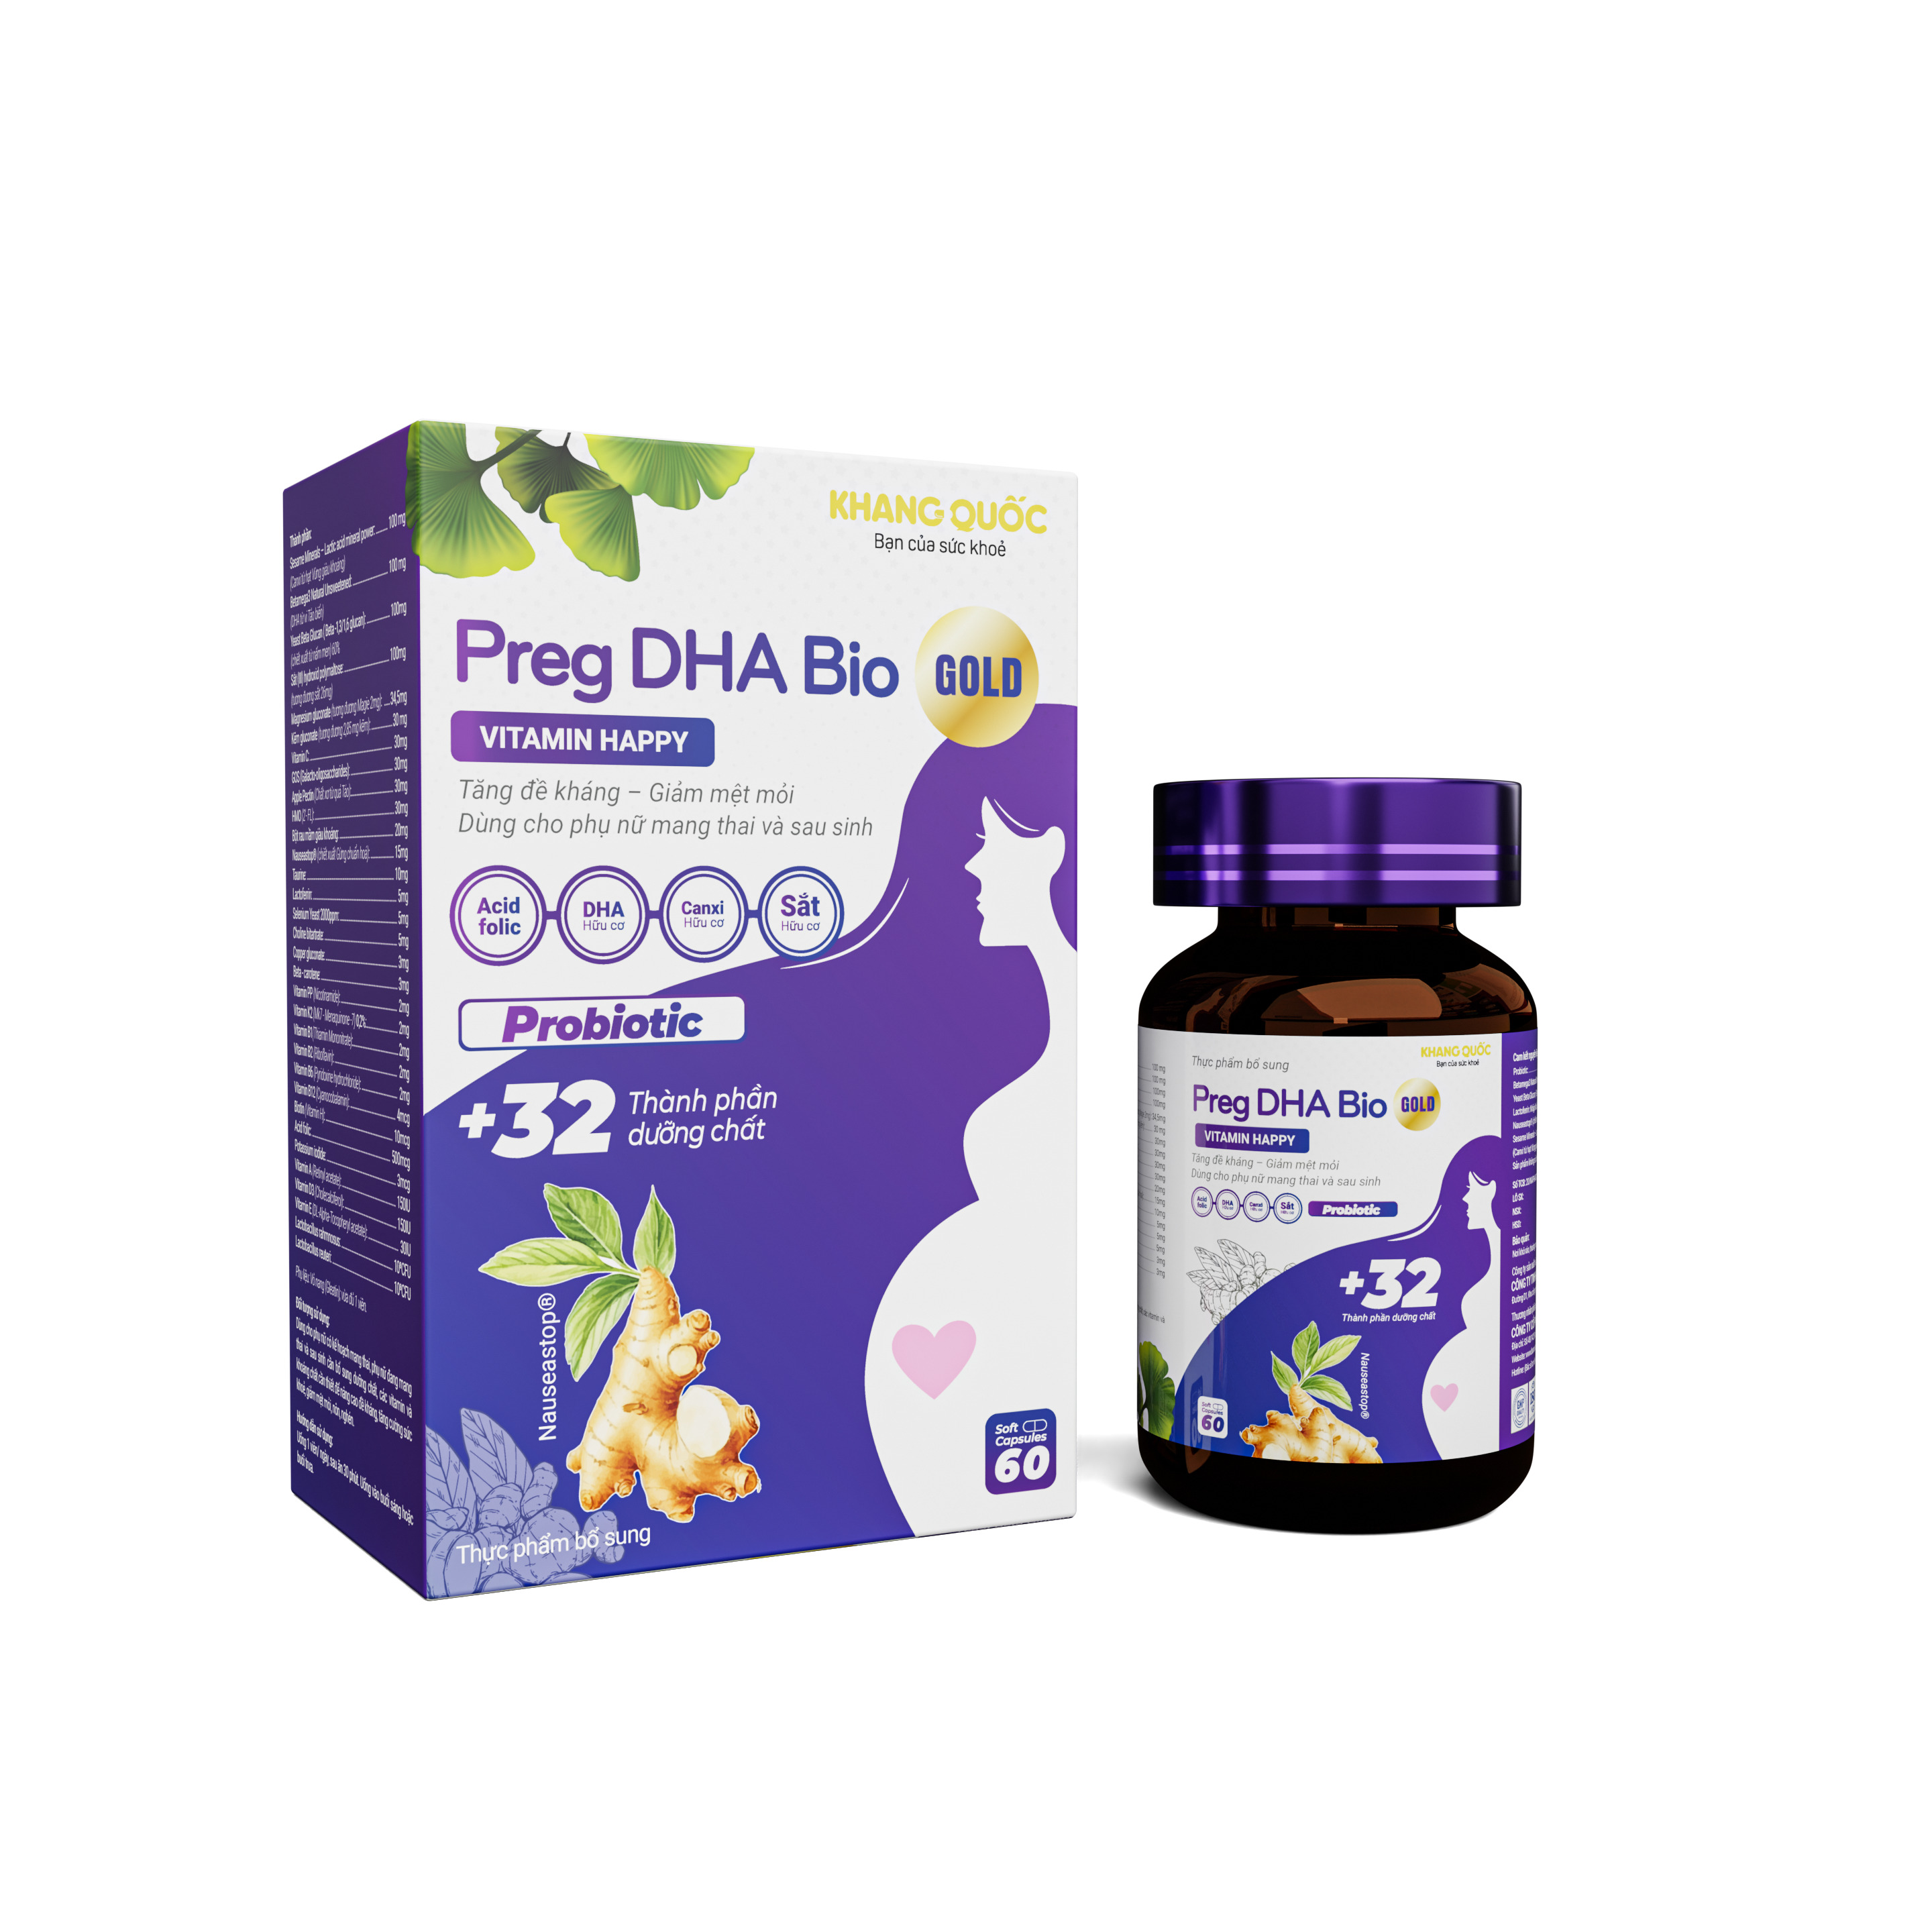 Preg DHA Bio Gold giúp bổ sung các chất dinh dưỡng còn thiếu